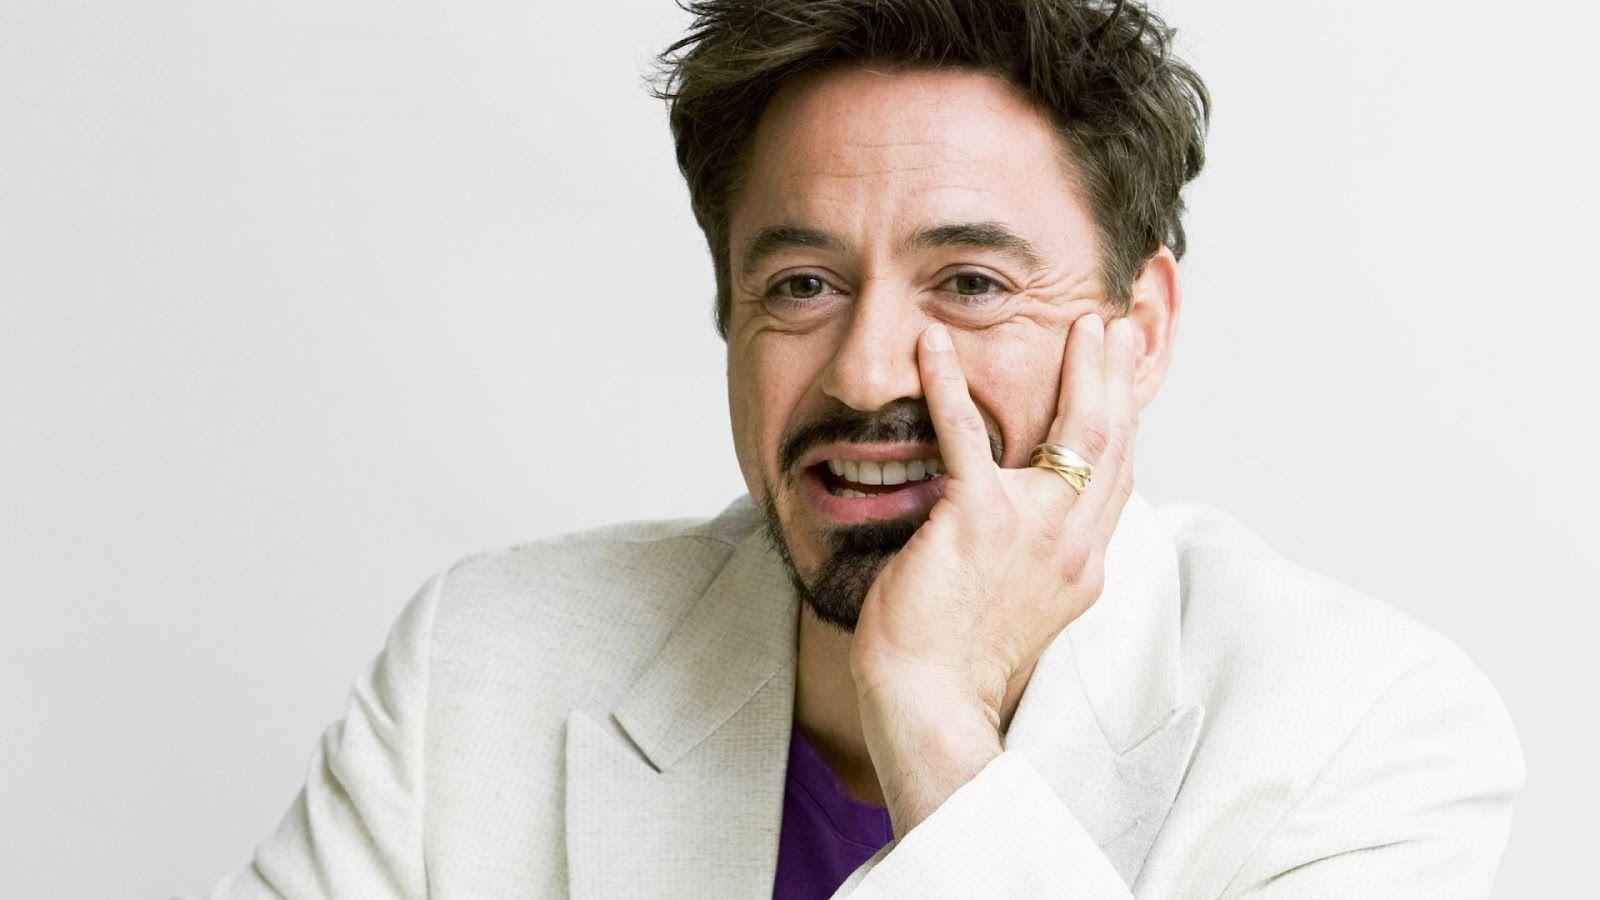 Image For > Robert Downey Jr Iron Man 4